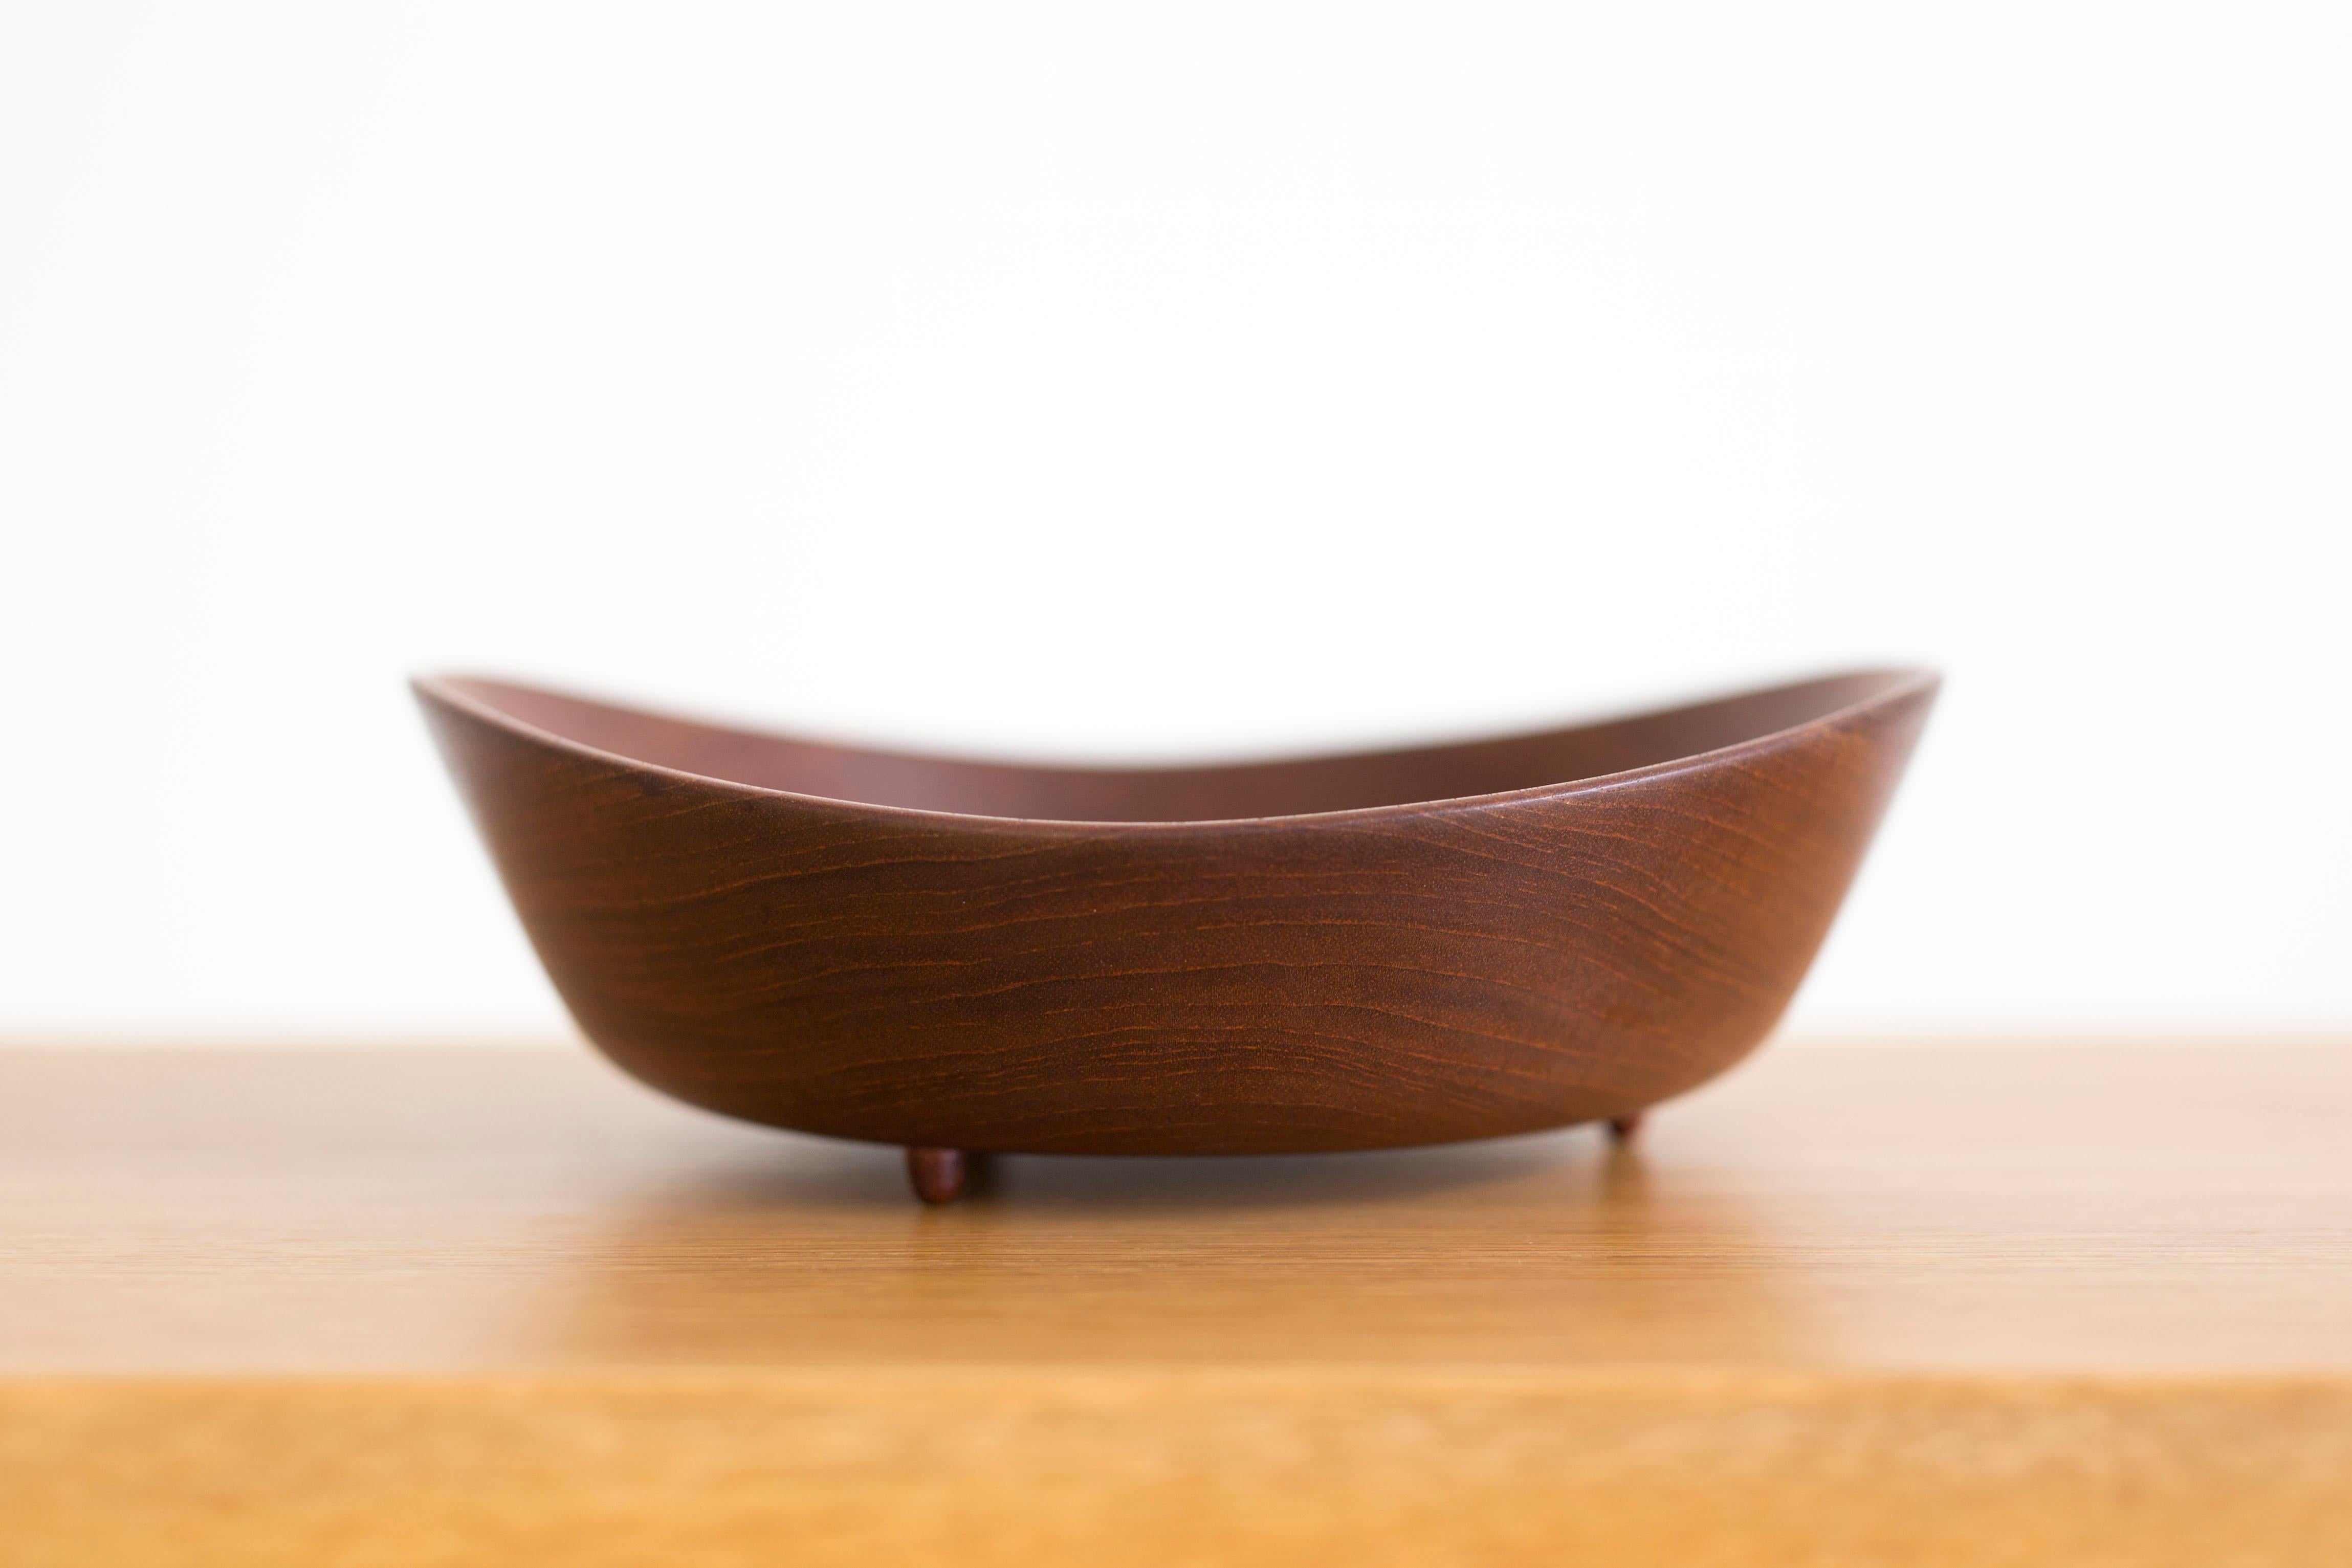 Finn Juhl teak bowl. 
Designed 1951 and made at Kay Bojesen, Denmark. Marked.